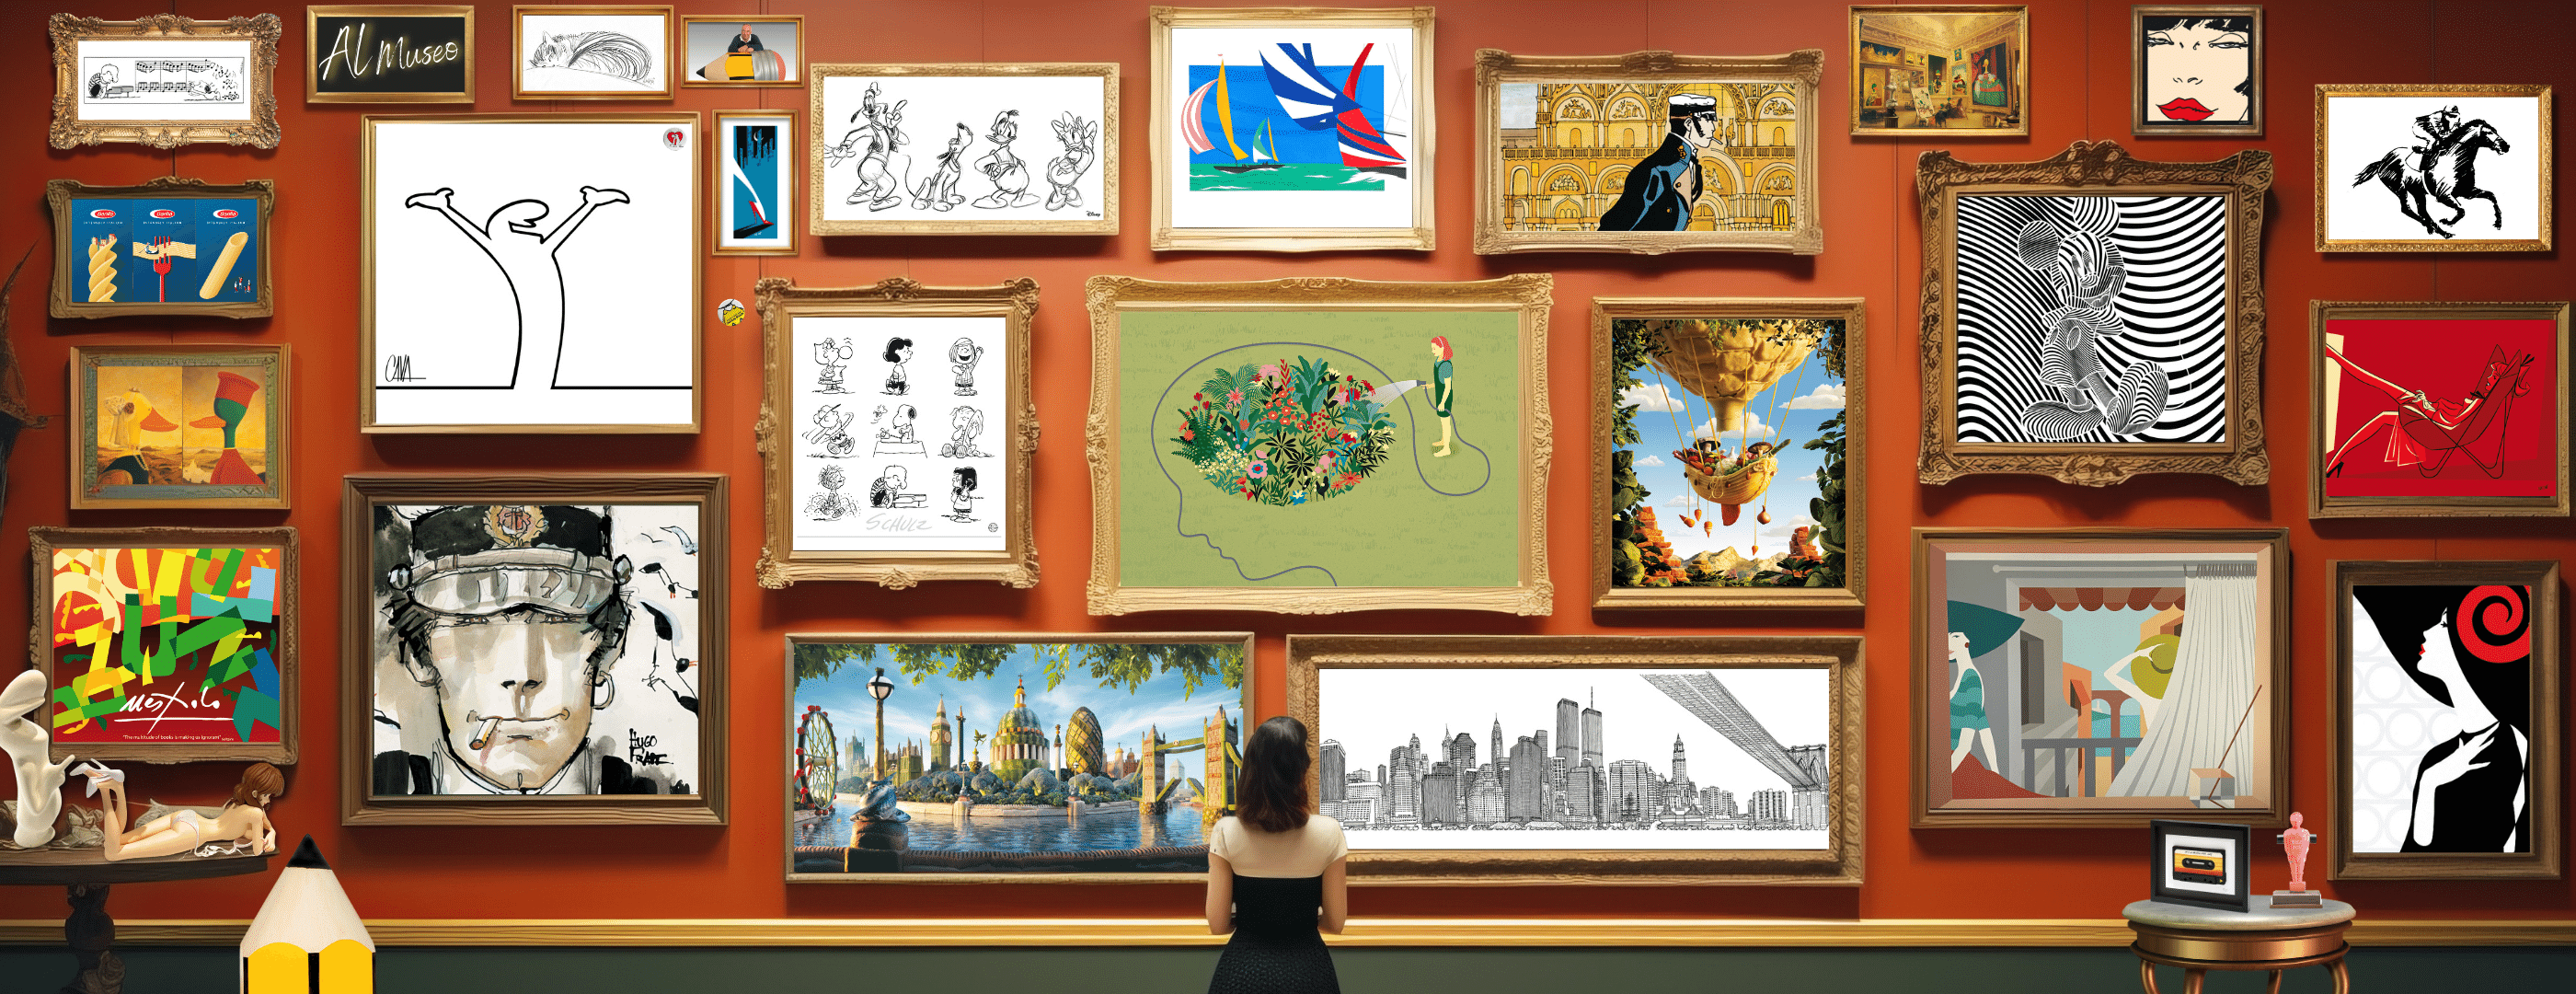 Homepage di Mycromart.com con una varietà di opere d'arte appese su una parete virtuale color terracotta, che invita a esplorare la collezione.